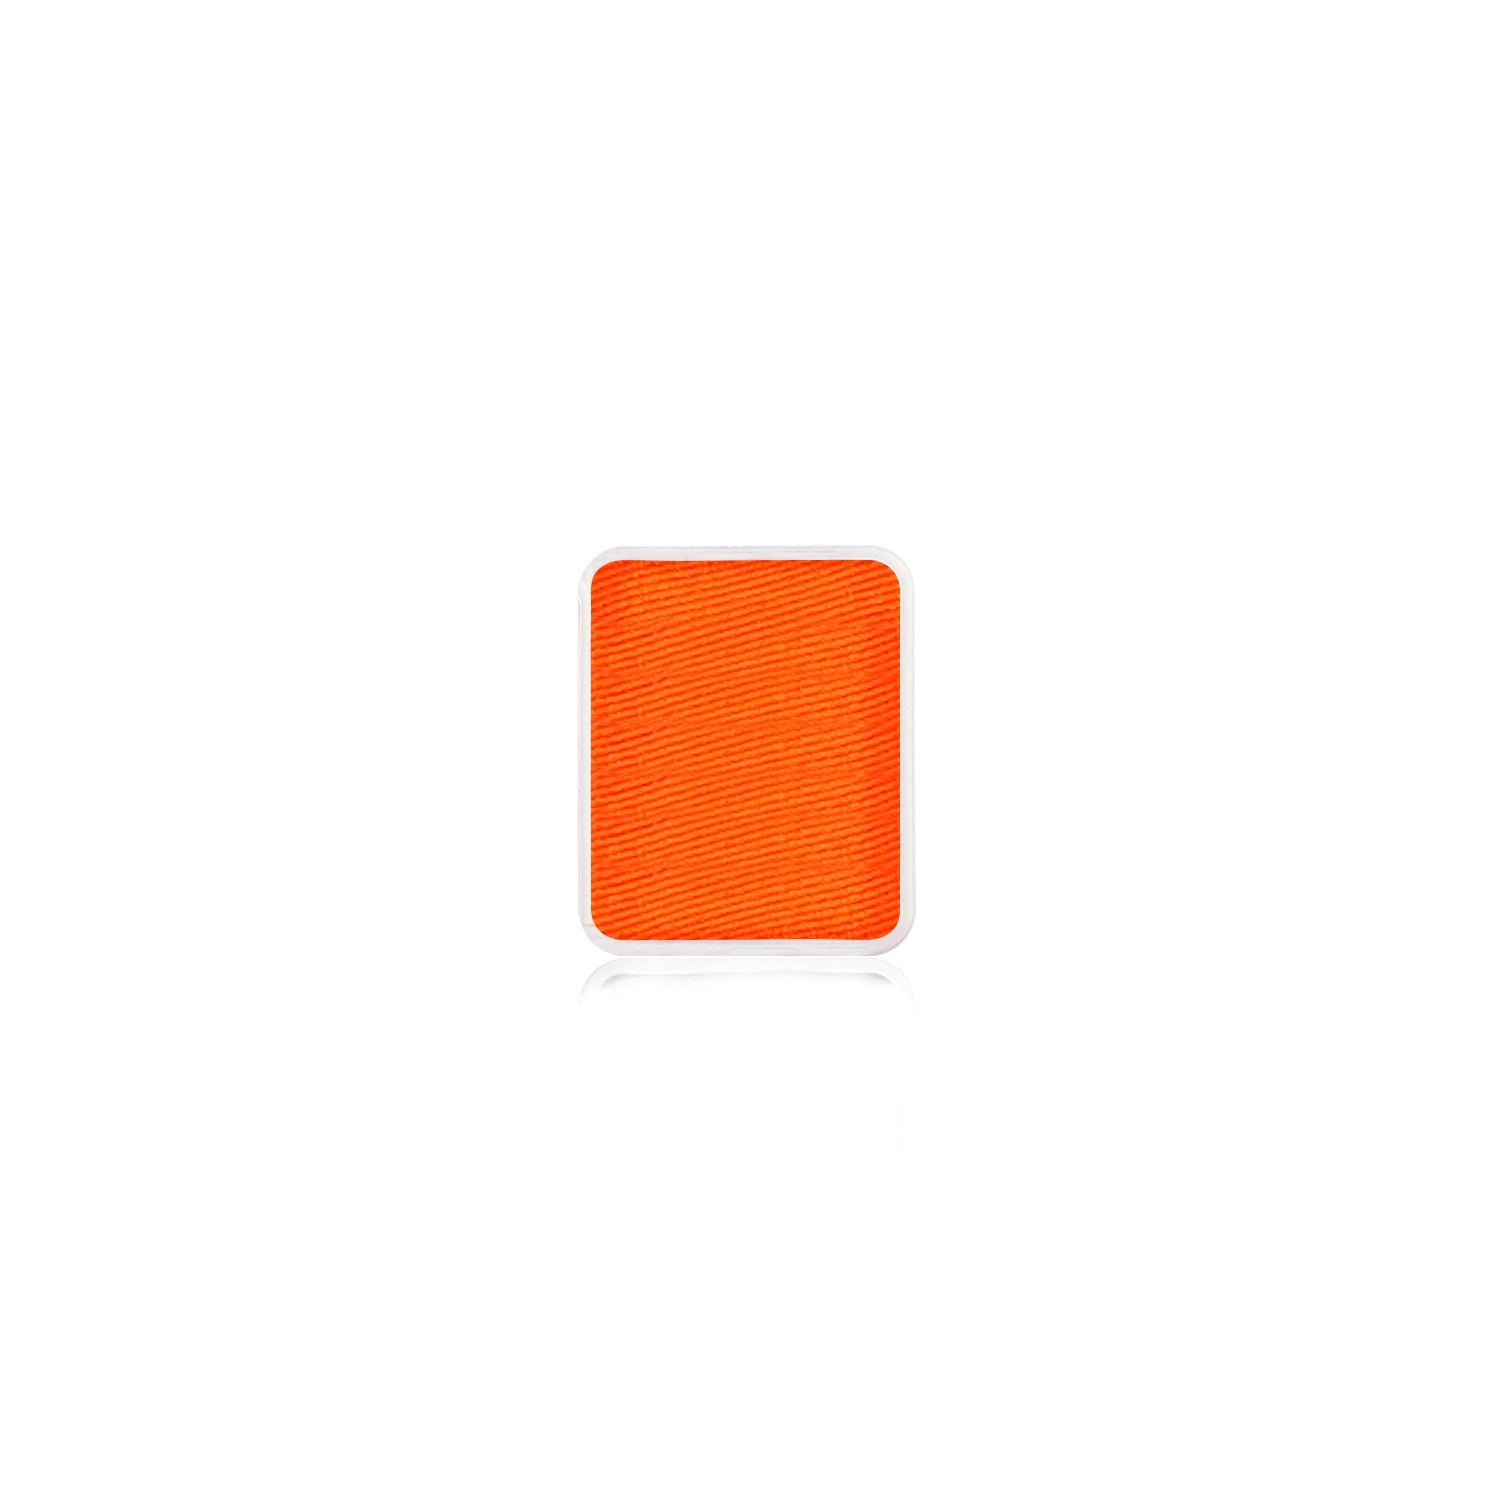 Kraze FX Face Paint Palette Refill - Neon Orange (0.21 oz/6 gm)